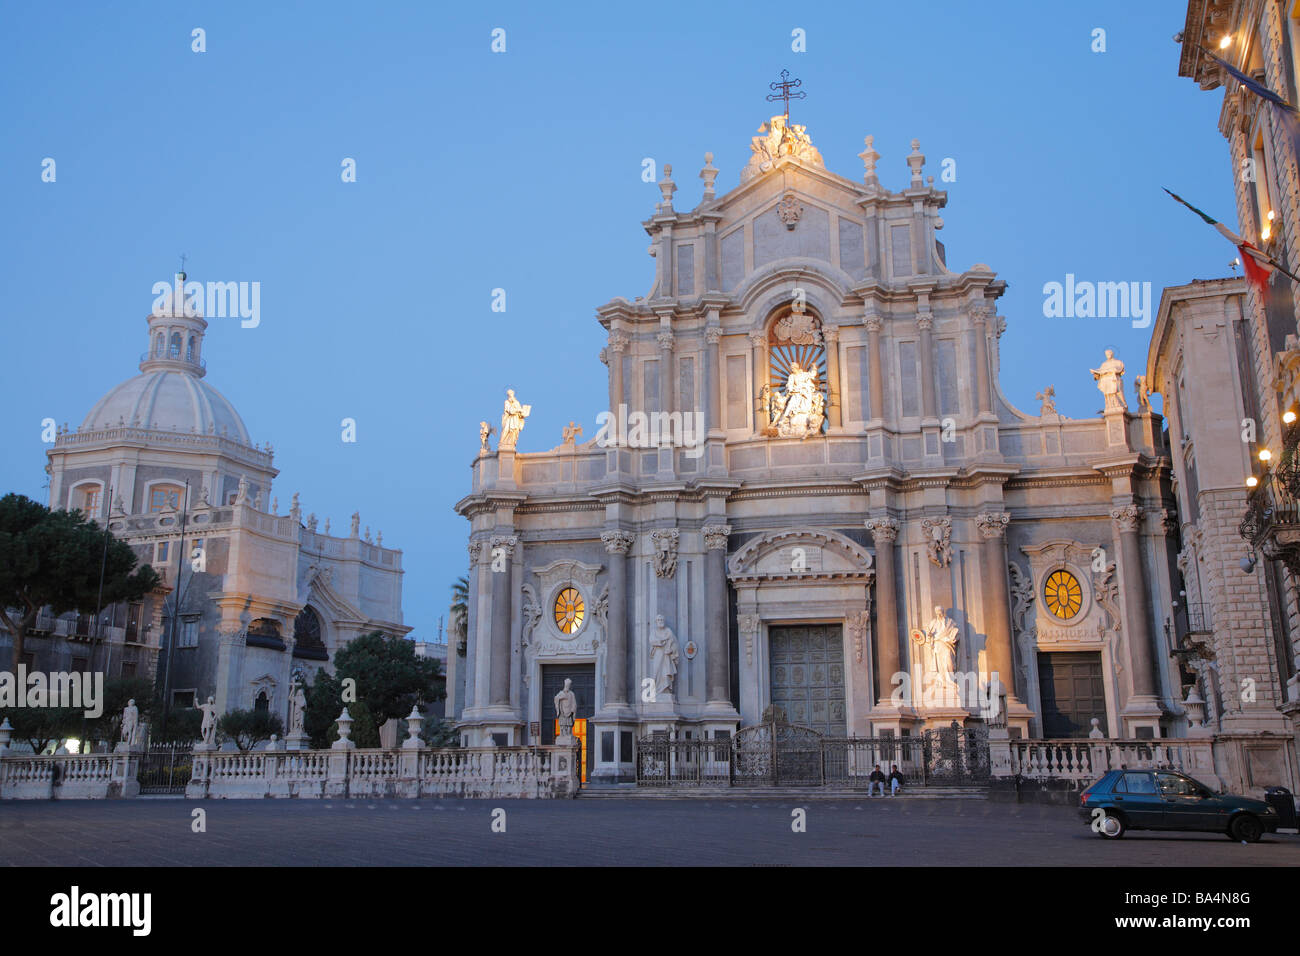 Duomo, Cathedral at night, Catania, Sicily, Italy Stock Photo